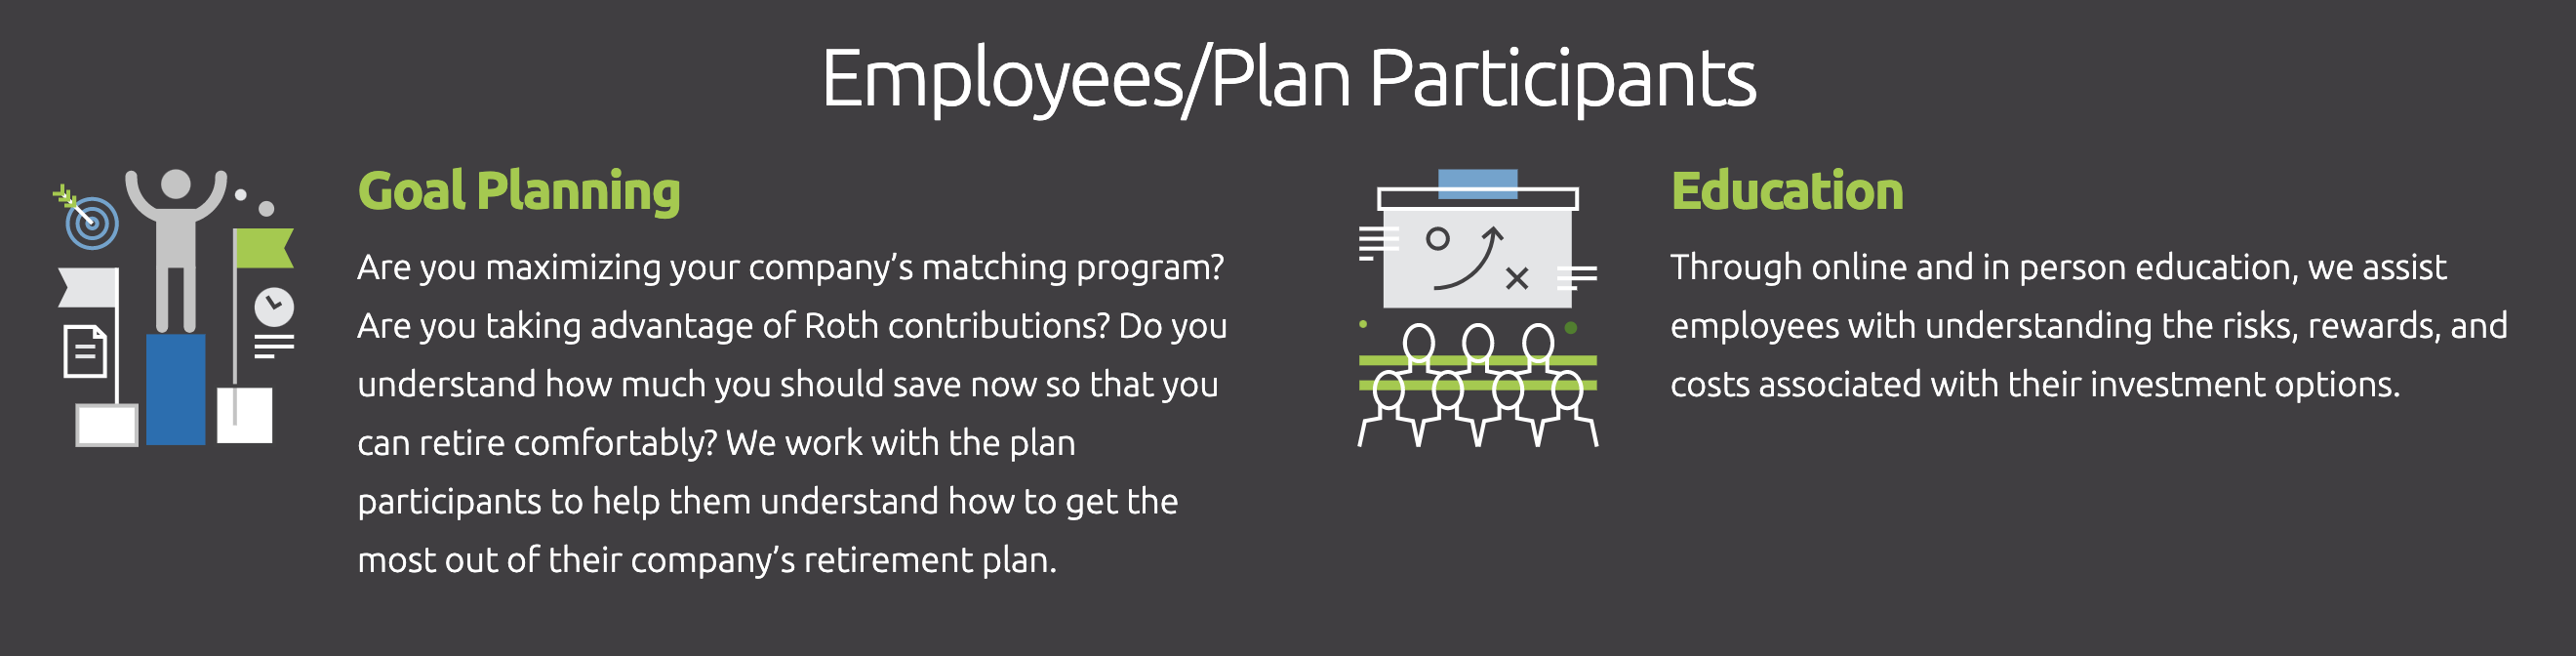 Employees Plans Participants